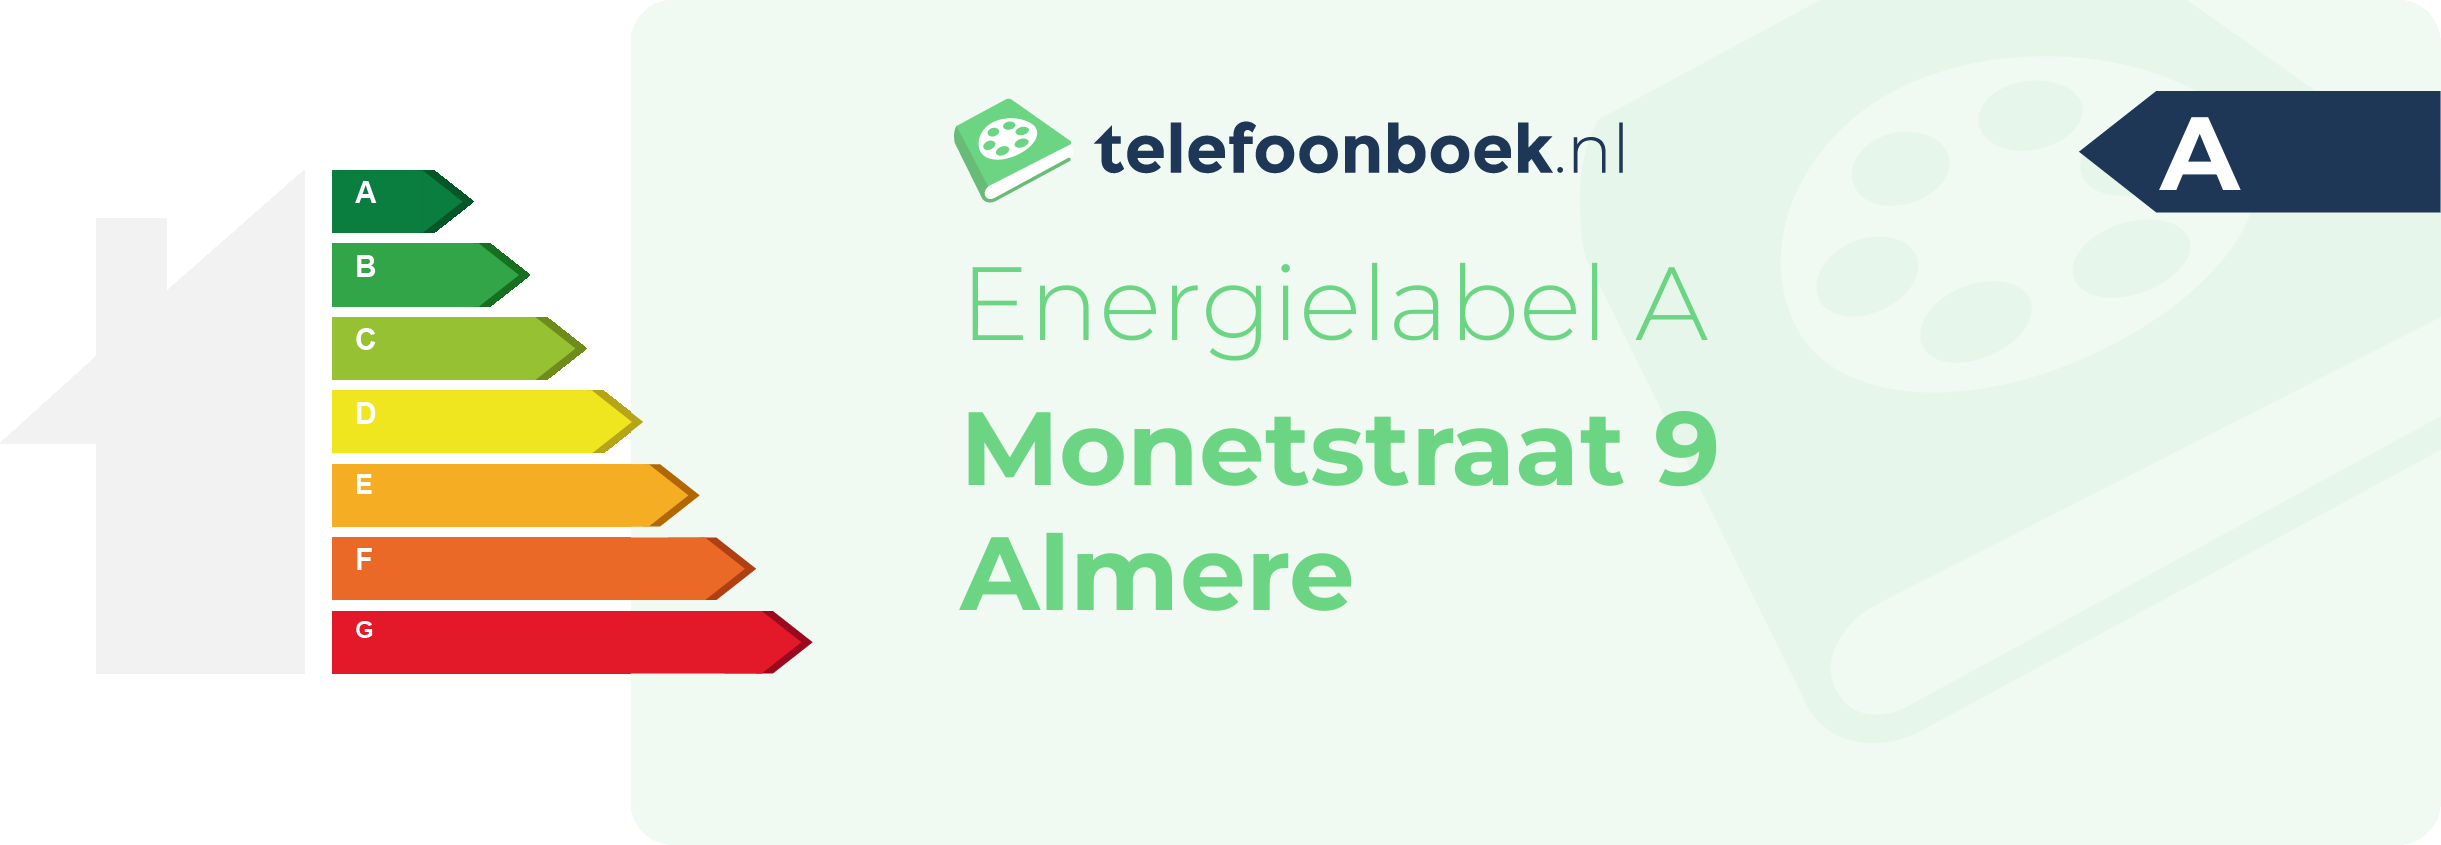 Energielabel Monetstraat 9 Almere